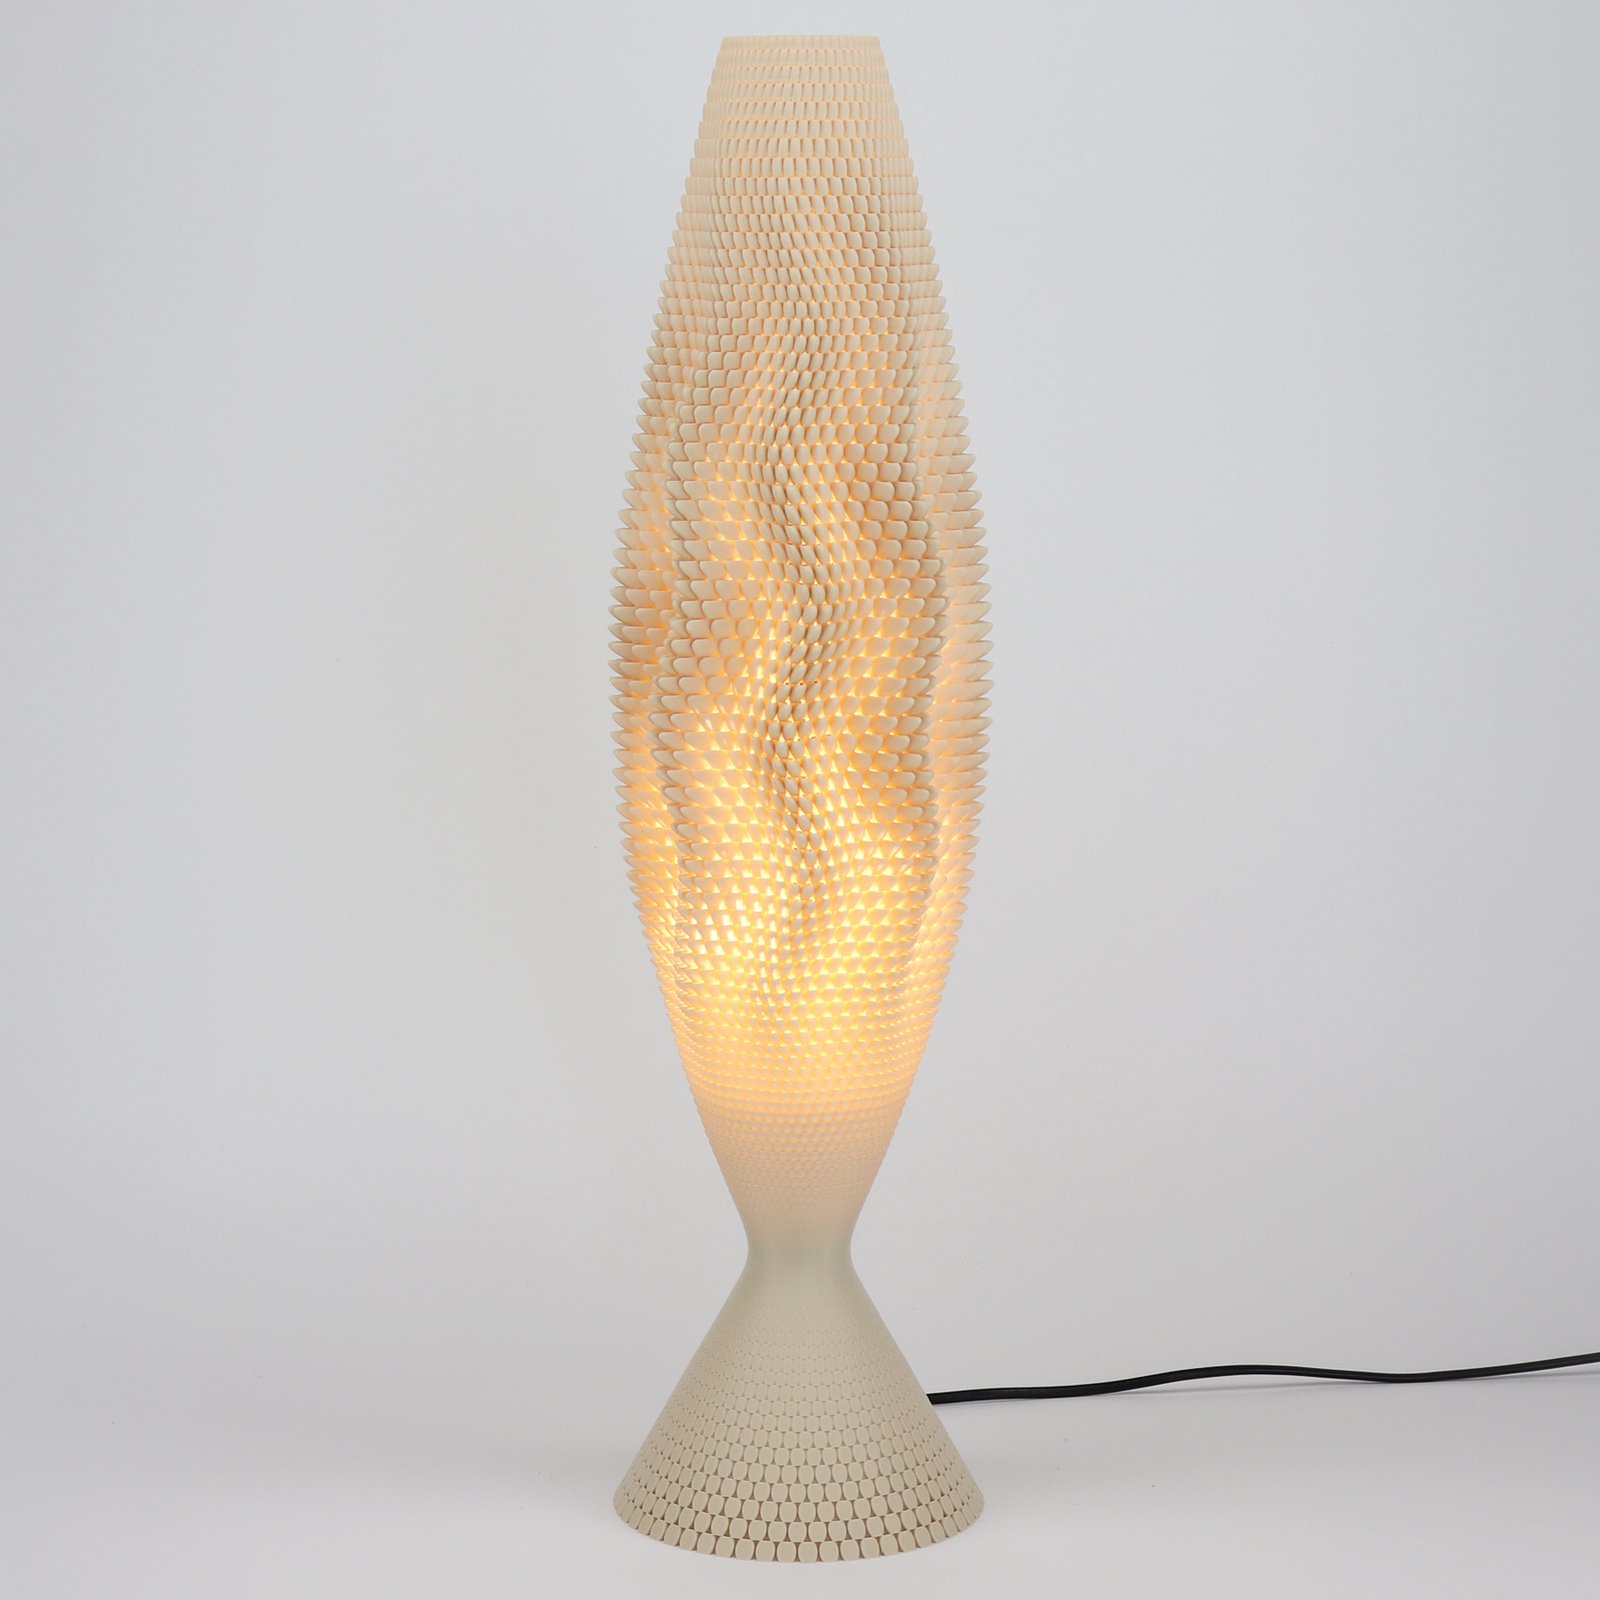 Lampada da tavolo Koral in materiale organico, Lina, 65 cm